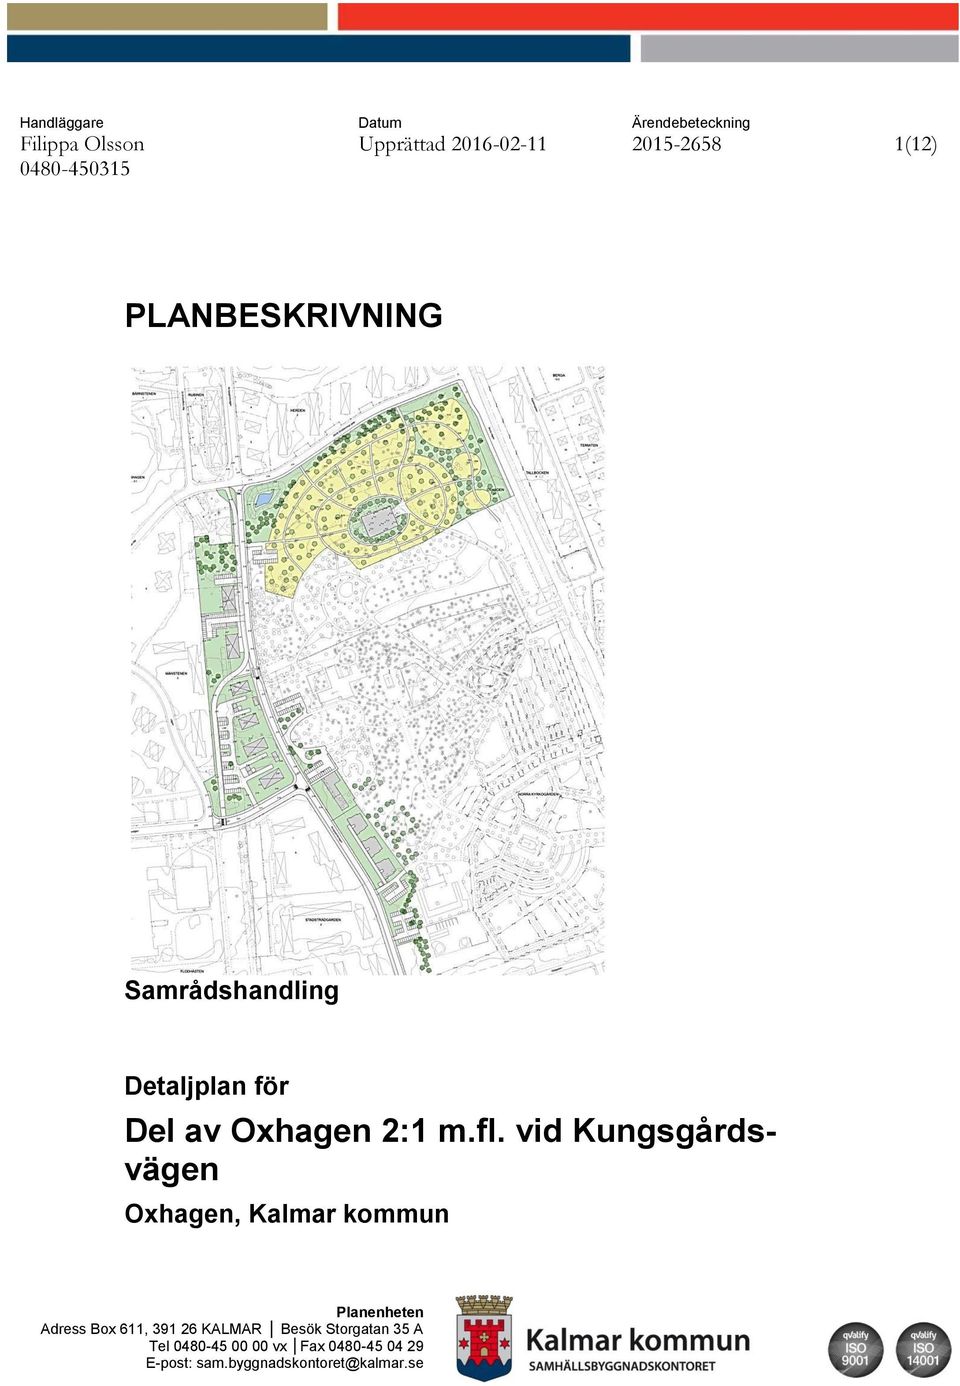 vid Kungsgårdsvägen Oxhagen, Kalmar kommun Planenheten Adress Box 611, 391 26 KALMAR